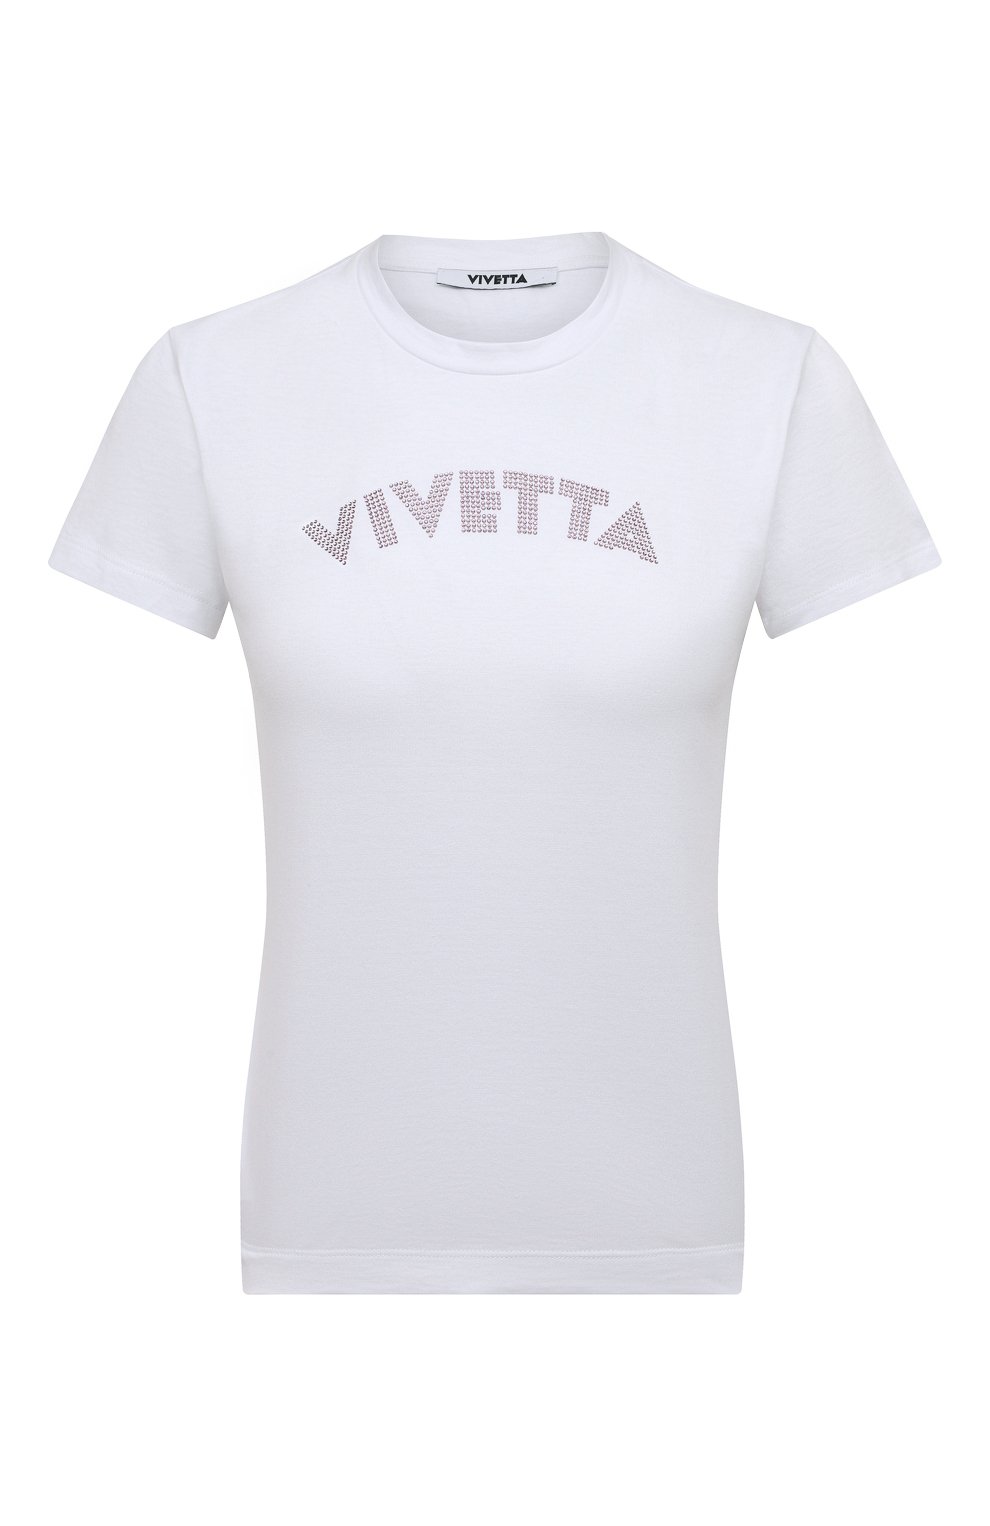 Футболки и топы Vivetta, Хлопковая футболка Vivetta, Италия, Белый, Хлопок: 100%;, 12719031  - купить